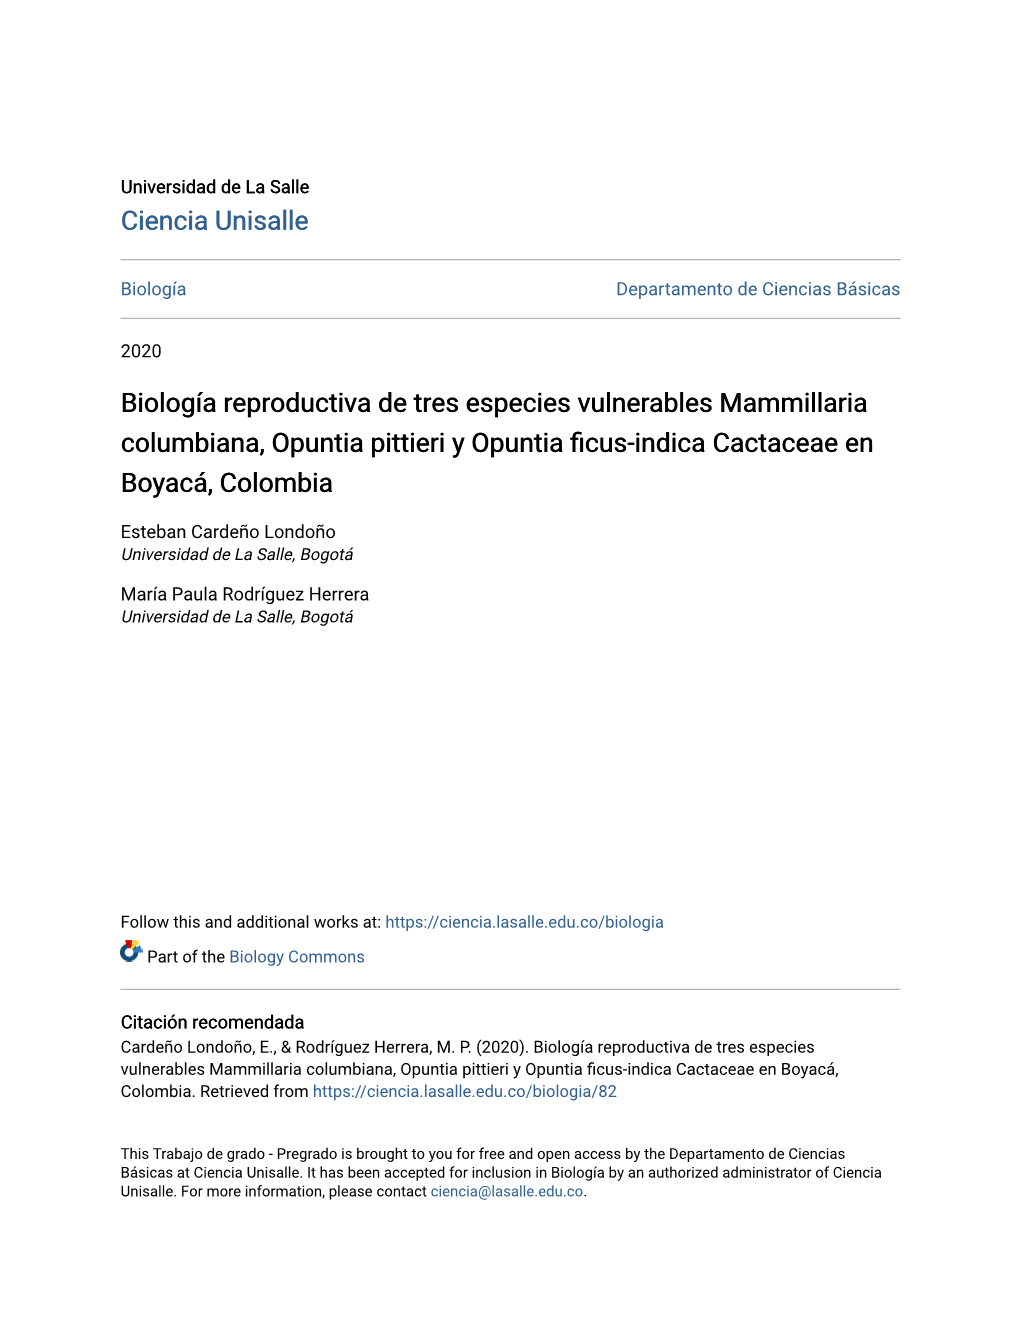 Biología Reproductiva De Tres Especies Vulnerables Mammillaria Columbiana, Opuntia Pittieri Y Opuntia Ficus-Indica Cactaceae En Boyacá, Colombia